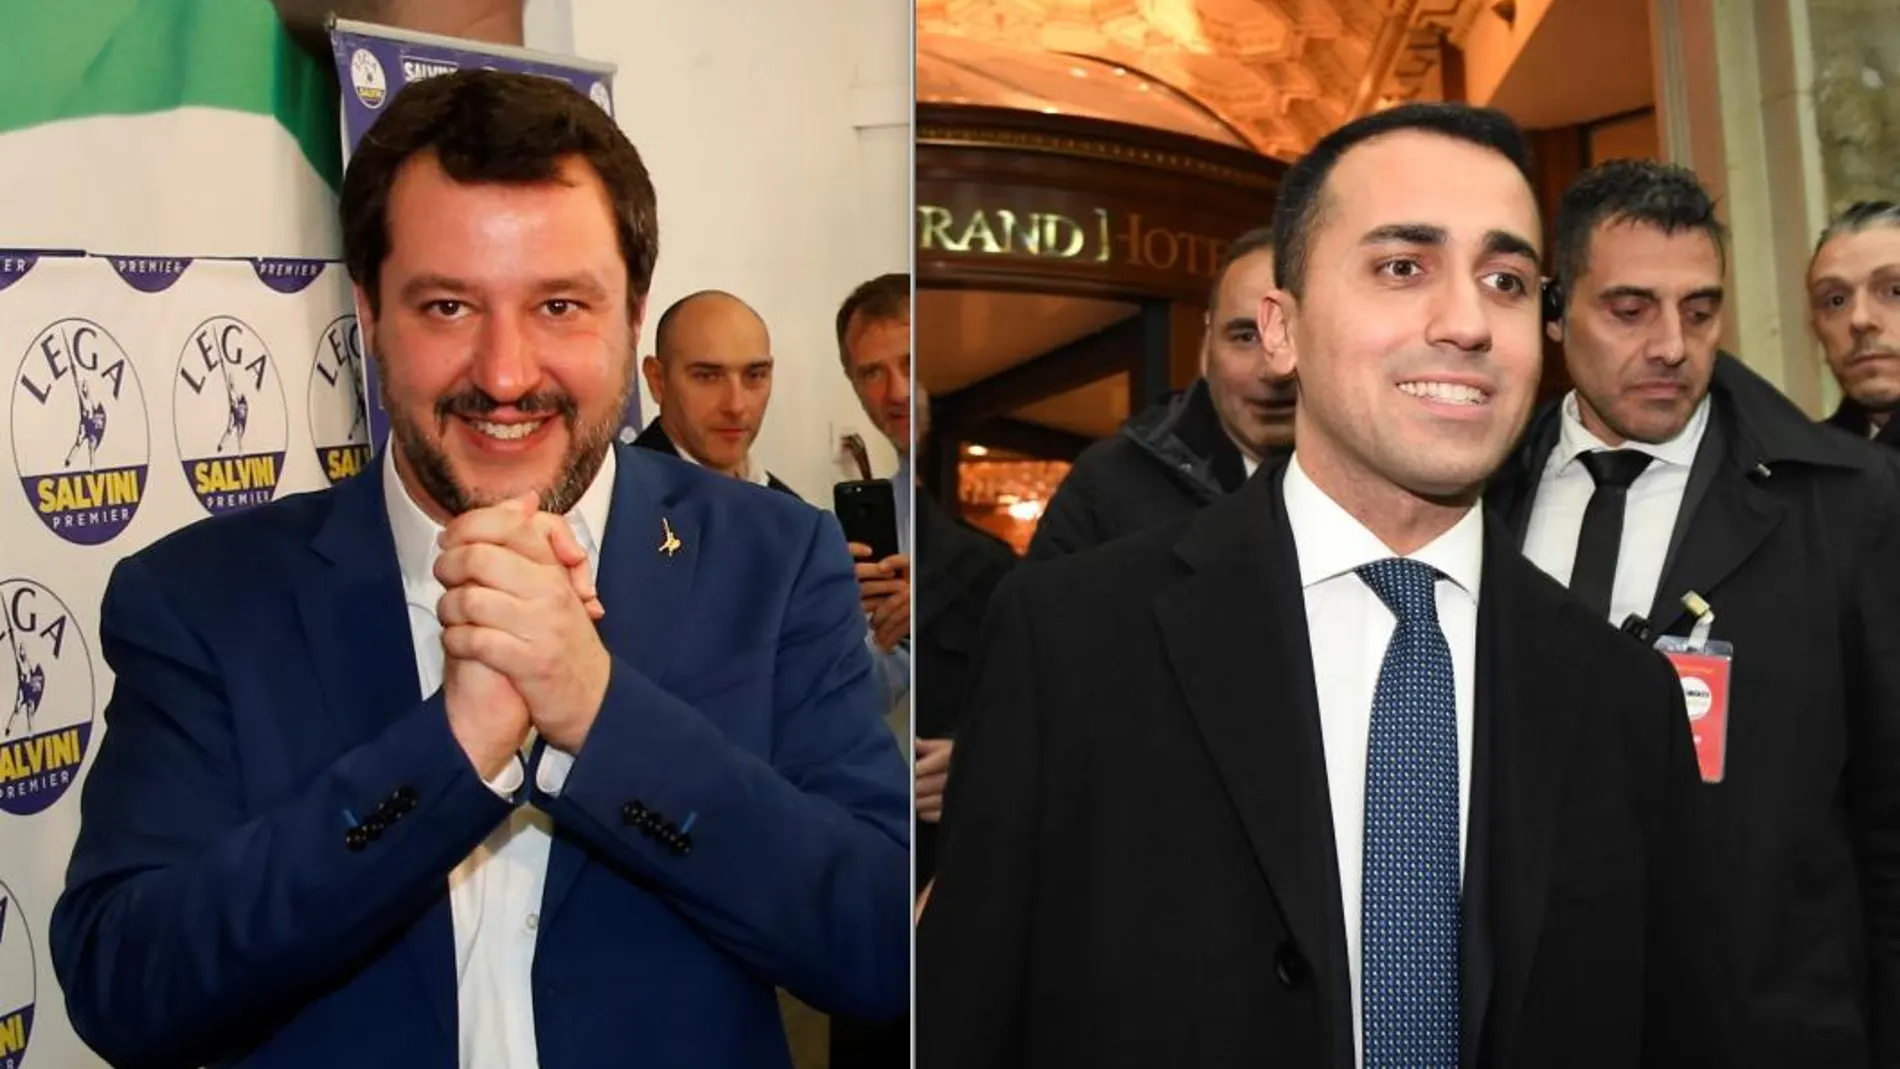 Matteo Salvini, líder de la Liga (izq) y Luigi Di Maio, líder del Movimiento 5 Estrellas (dcha). Candidatos a Primer Ministro italiano